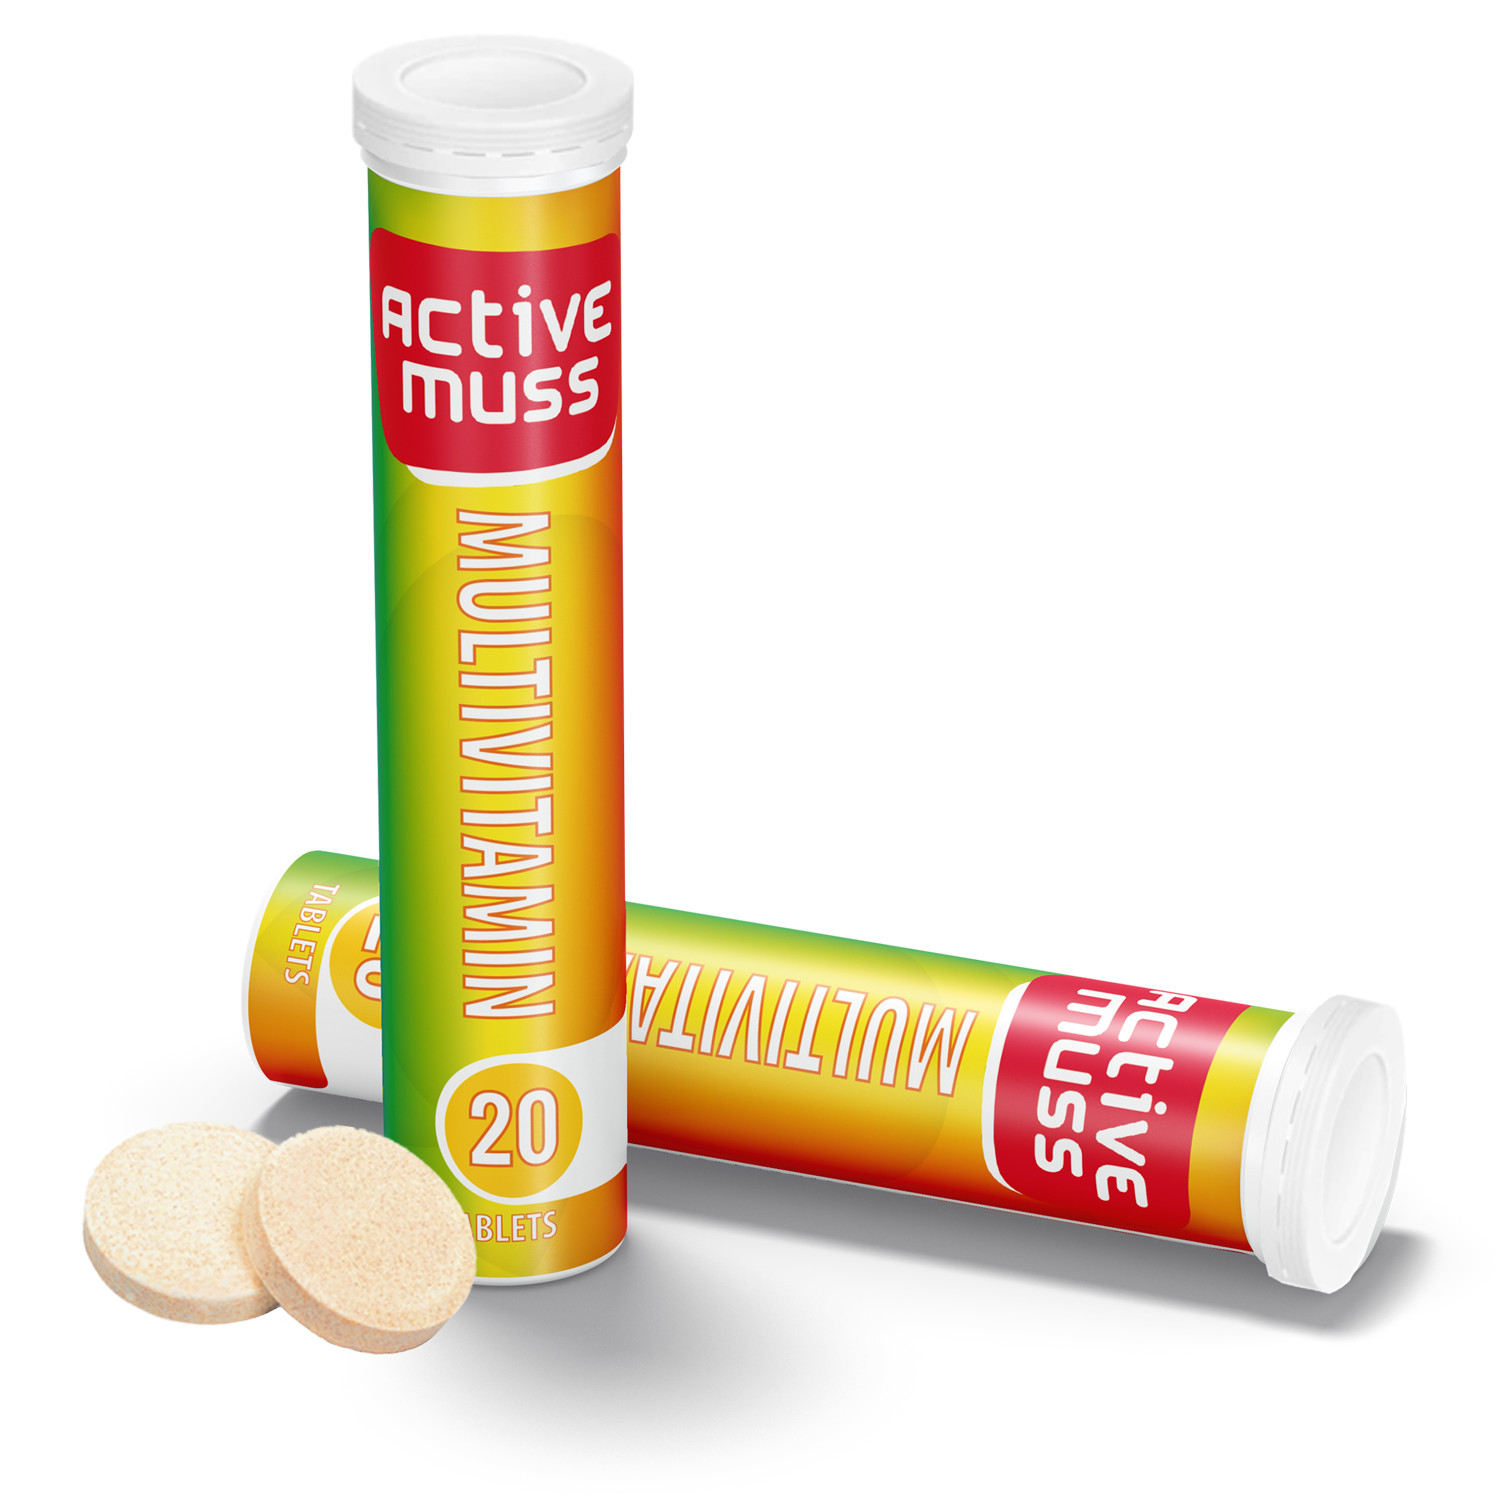 Viên Sủi Activemuss Multivitamin, Lựa Chọn Hoàn Hảo Để Bổ Sung Các Vitamin Cần Thiết, Hỗ Trợ Tăng Cường Hệ Miễn Dịch, Cải Thiện Sức Khỏe Tim Mạch Và Duy Trì Sức Khỏe Chung Cho Cơ Thể. Tuýp 20 Viên Sủi.